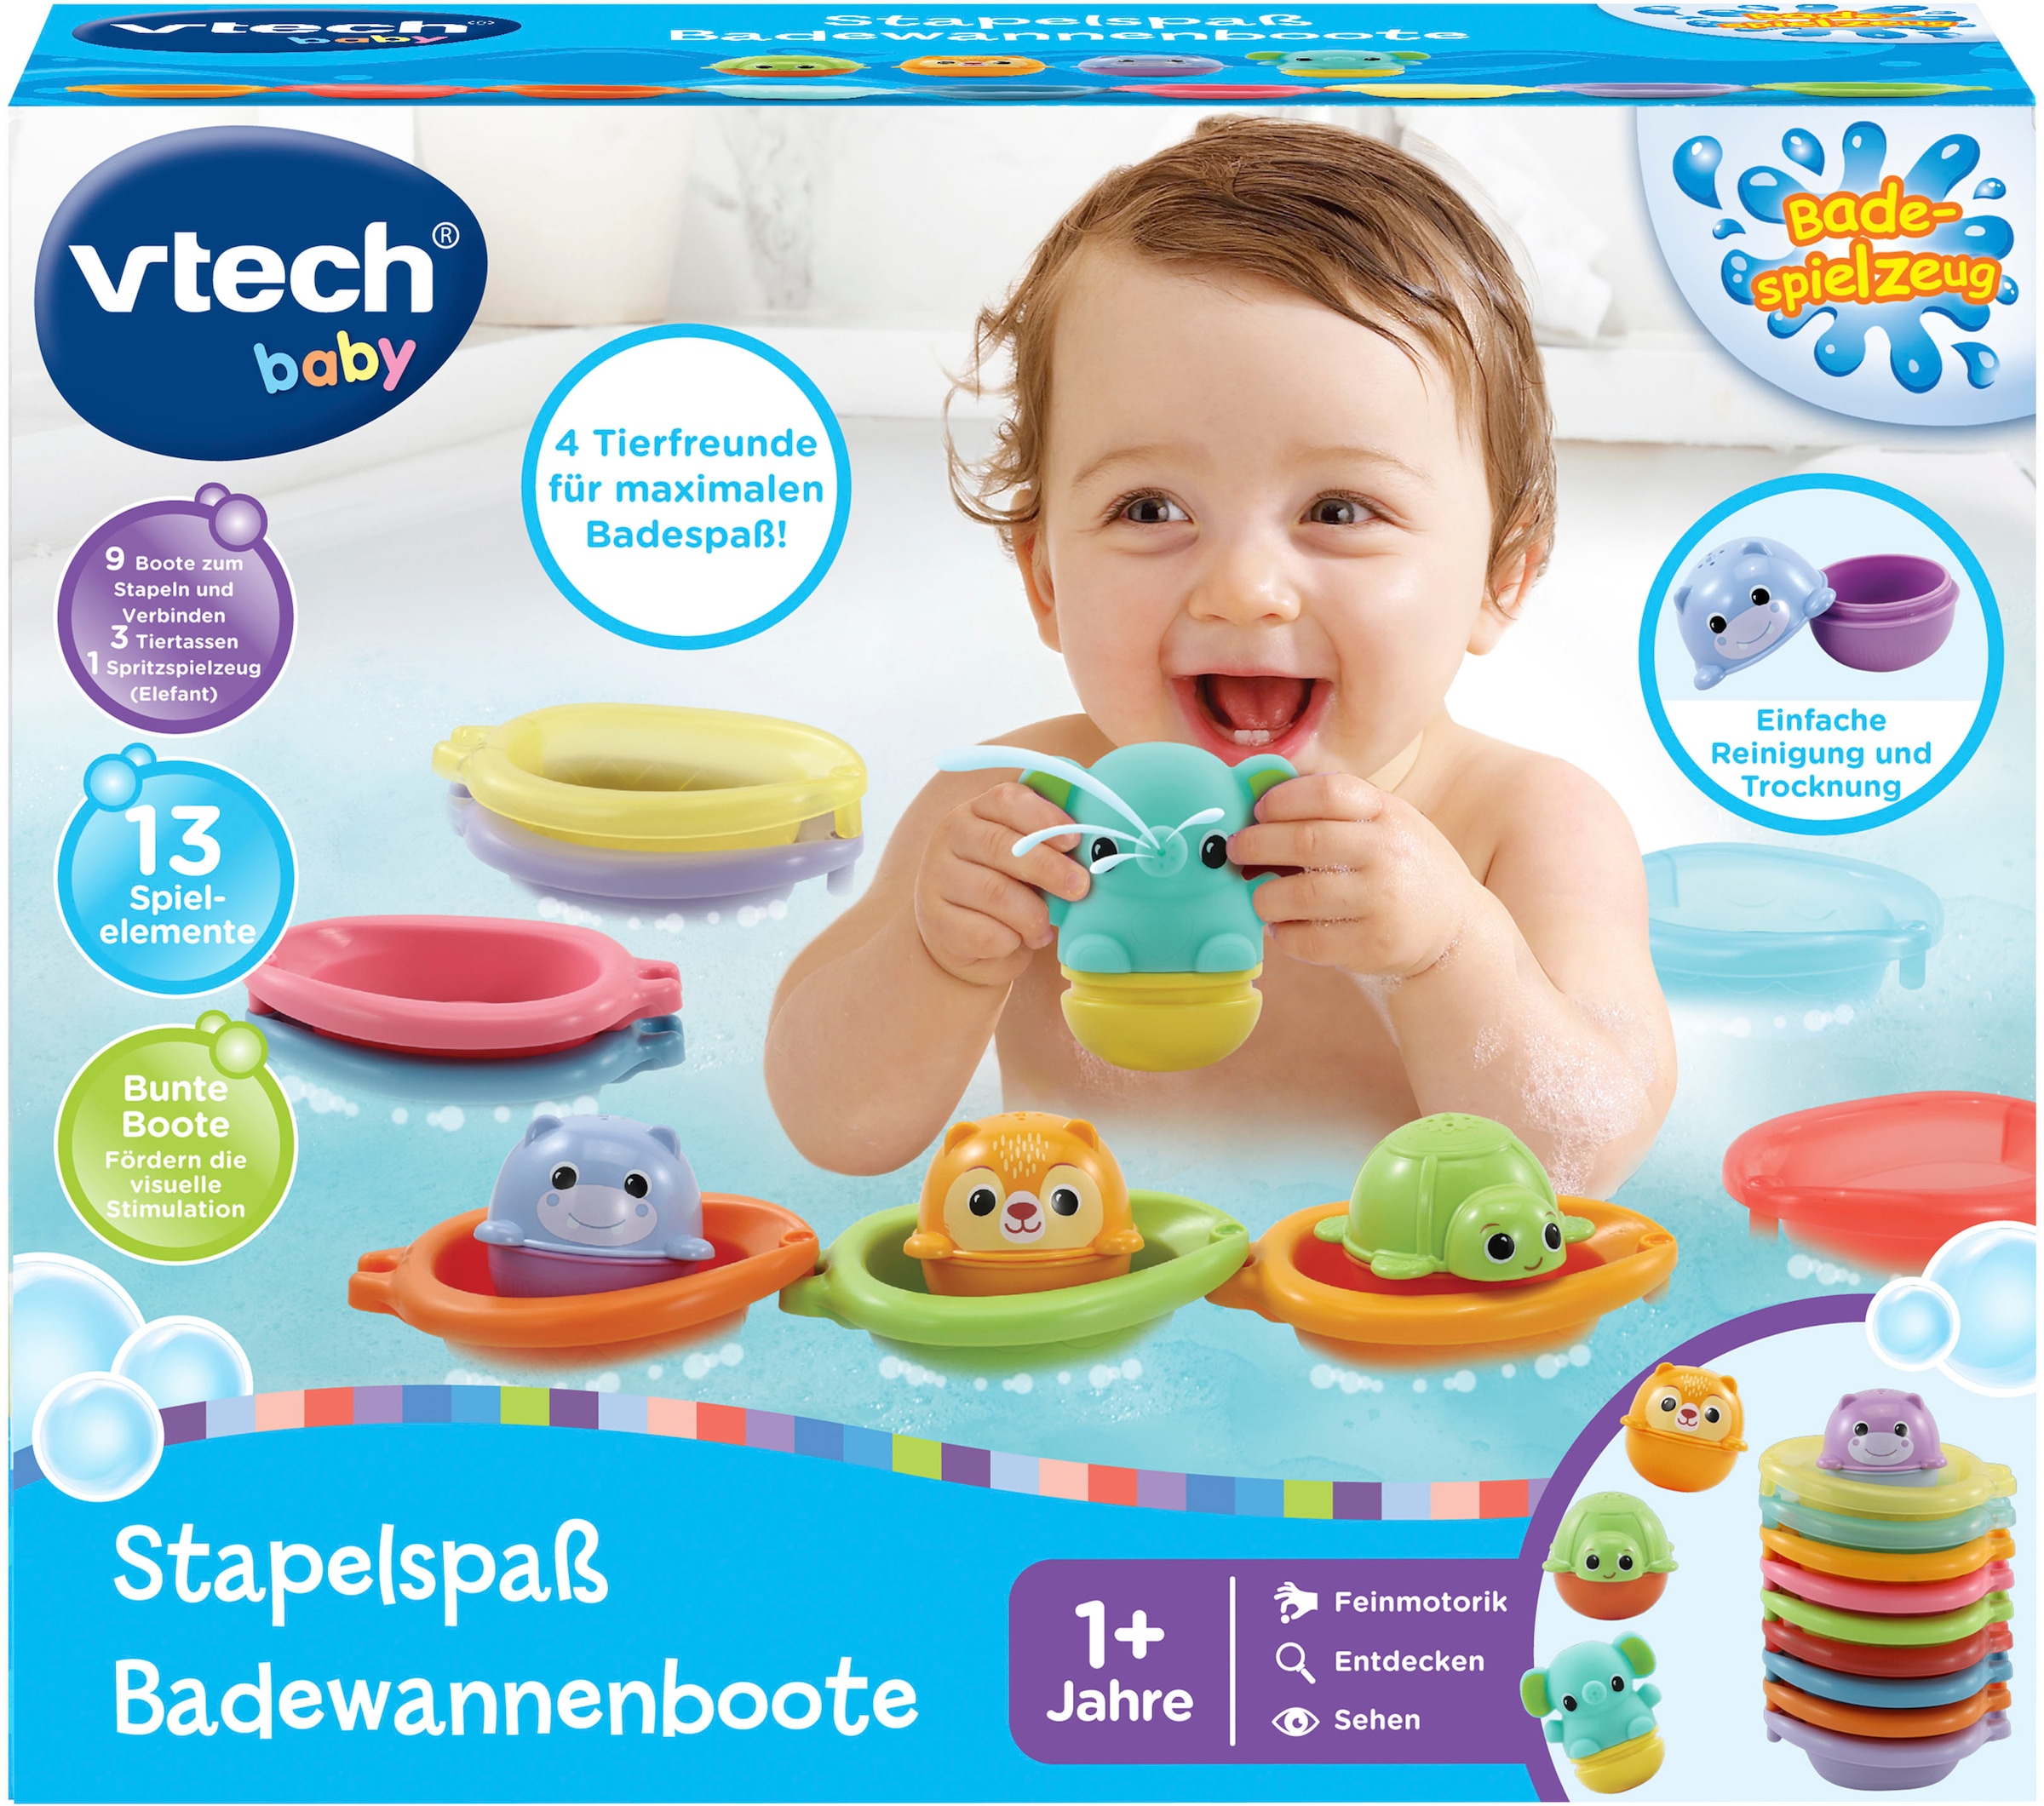 Vtech® Badespielzeug »Vtech Baby, Stapelspaß Badewannenboote« online kaufen  | OTTO